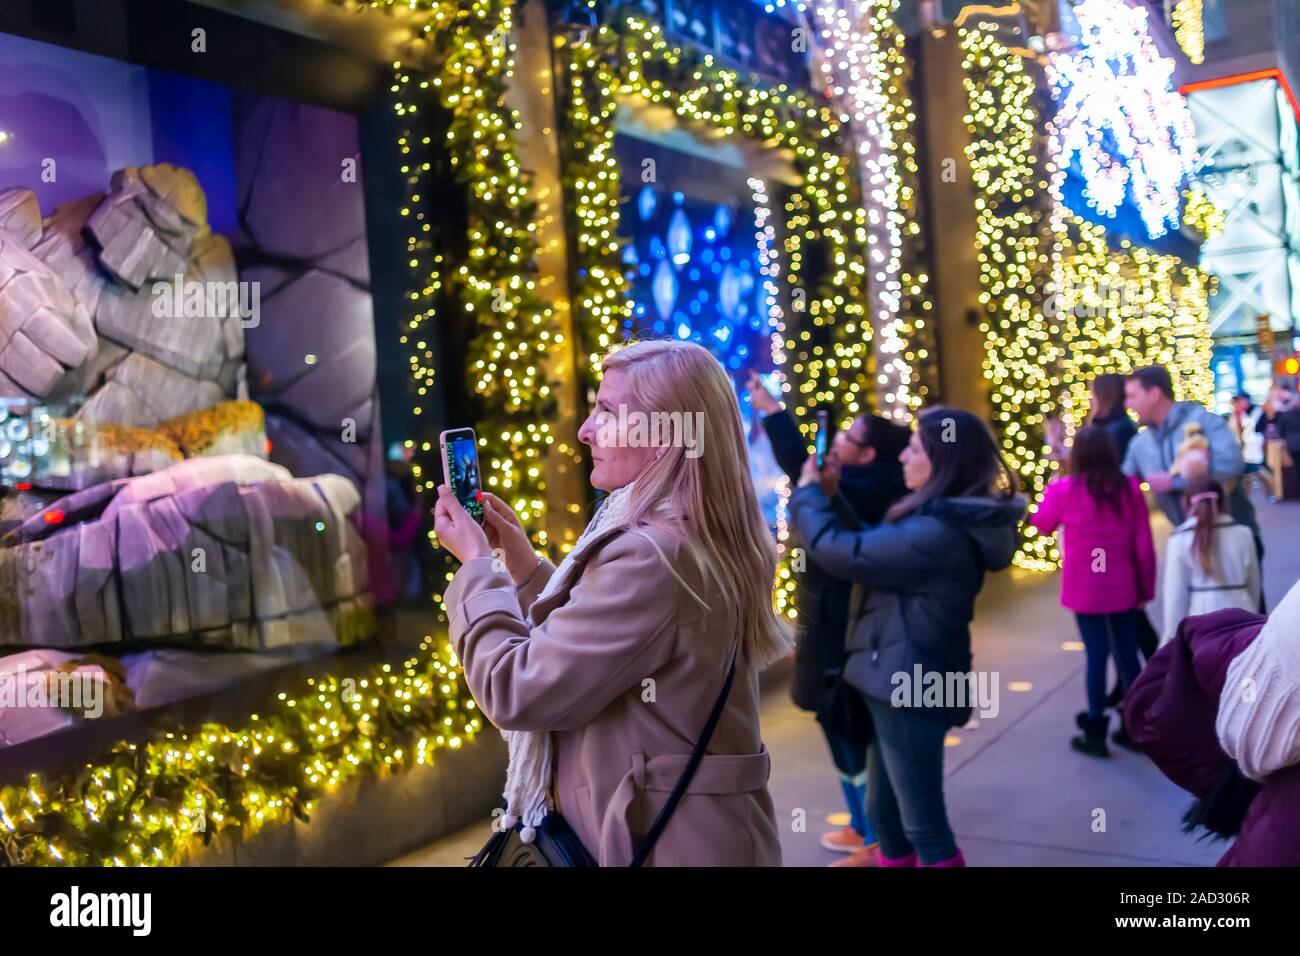 Käufer an der Weihnachten windows von Saks Fifth Avenue an der Fifth Avenue in Midtown Manhattan in New York am Dienstag, 26. November 2019. Dieses Jahr Saks Fifth Avenue hat mit Disney für "Frozen 2 "themed Windows eingegangen. (© Richard B. Levine) Stockfoto